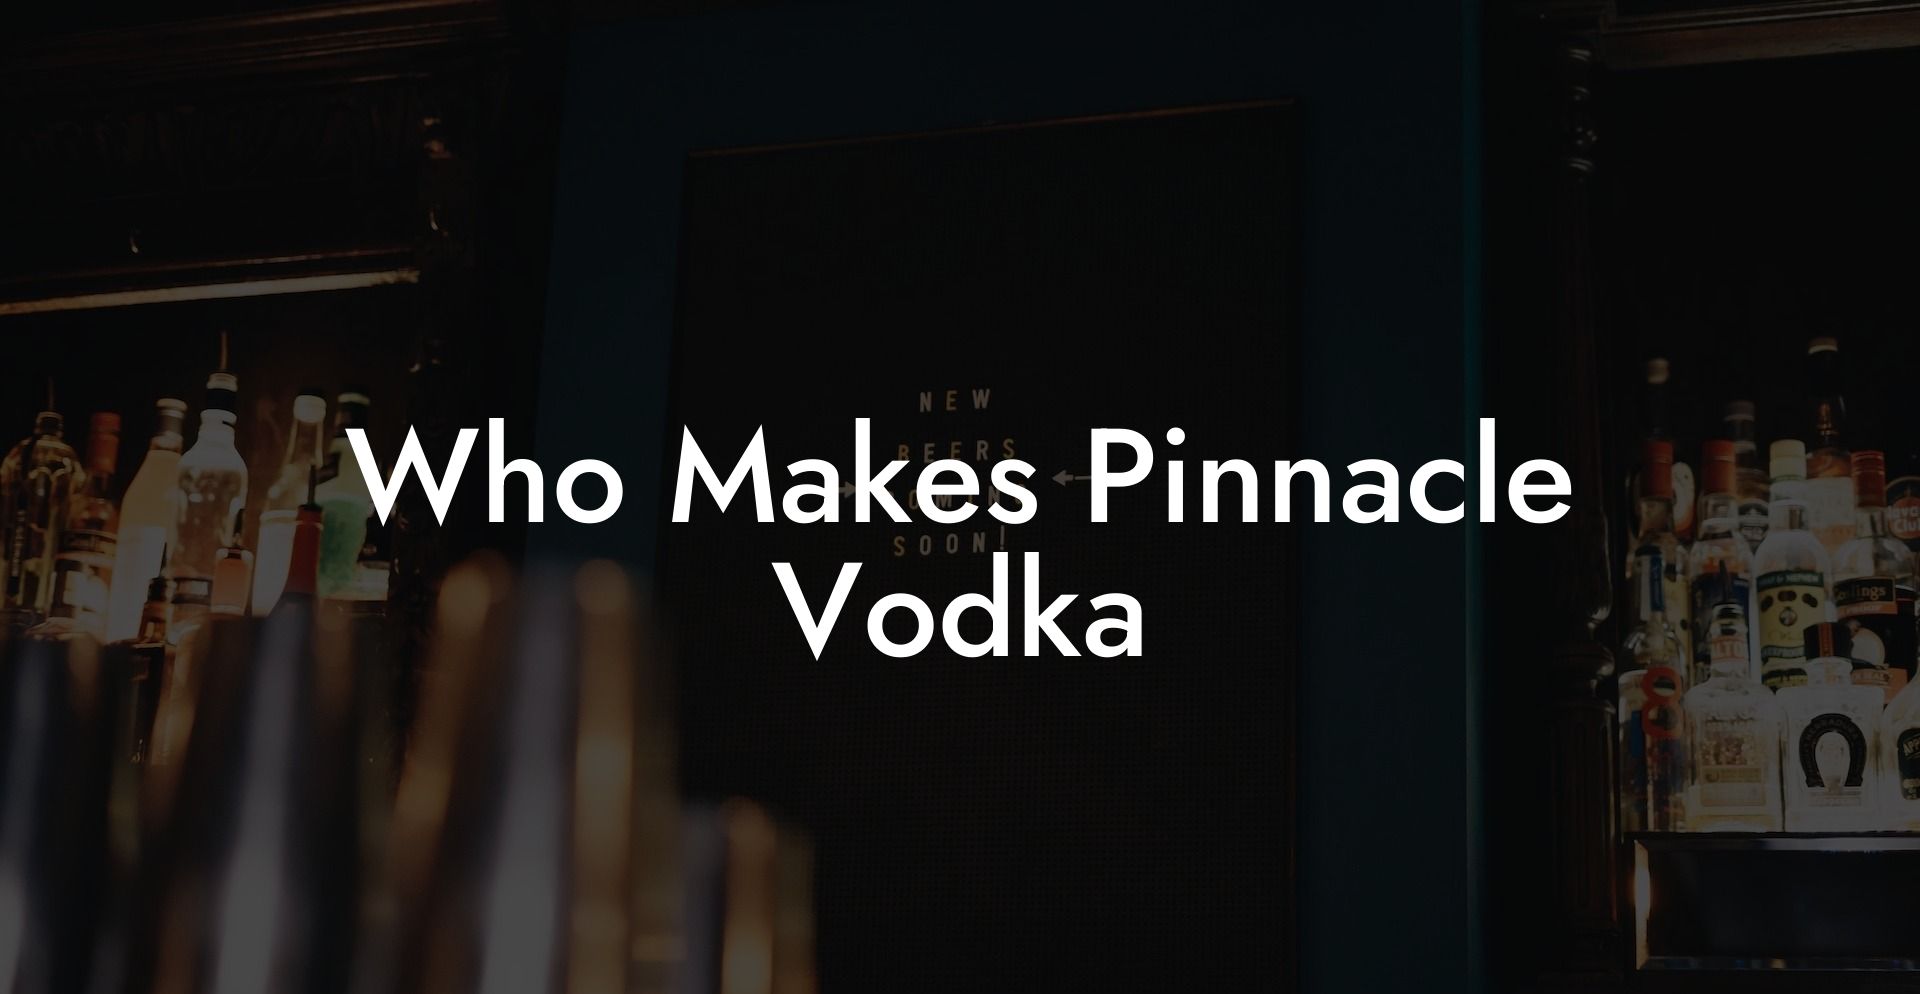 Who Makes Pinnacle Vodka